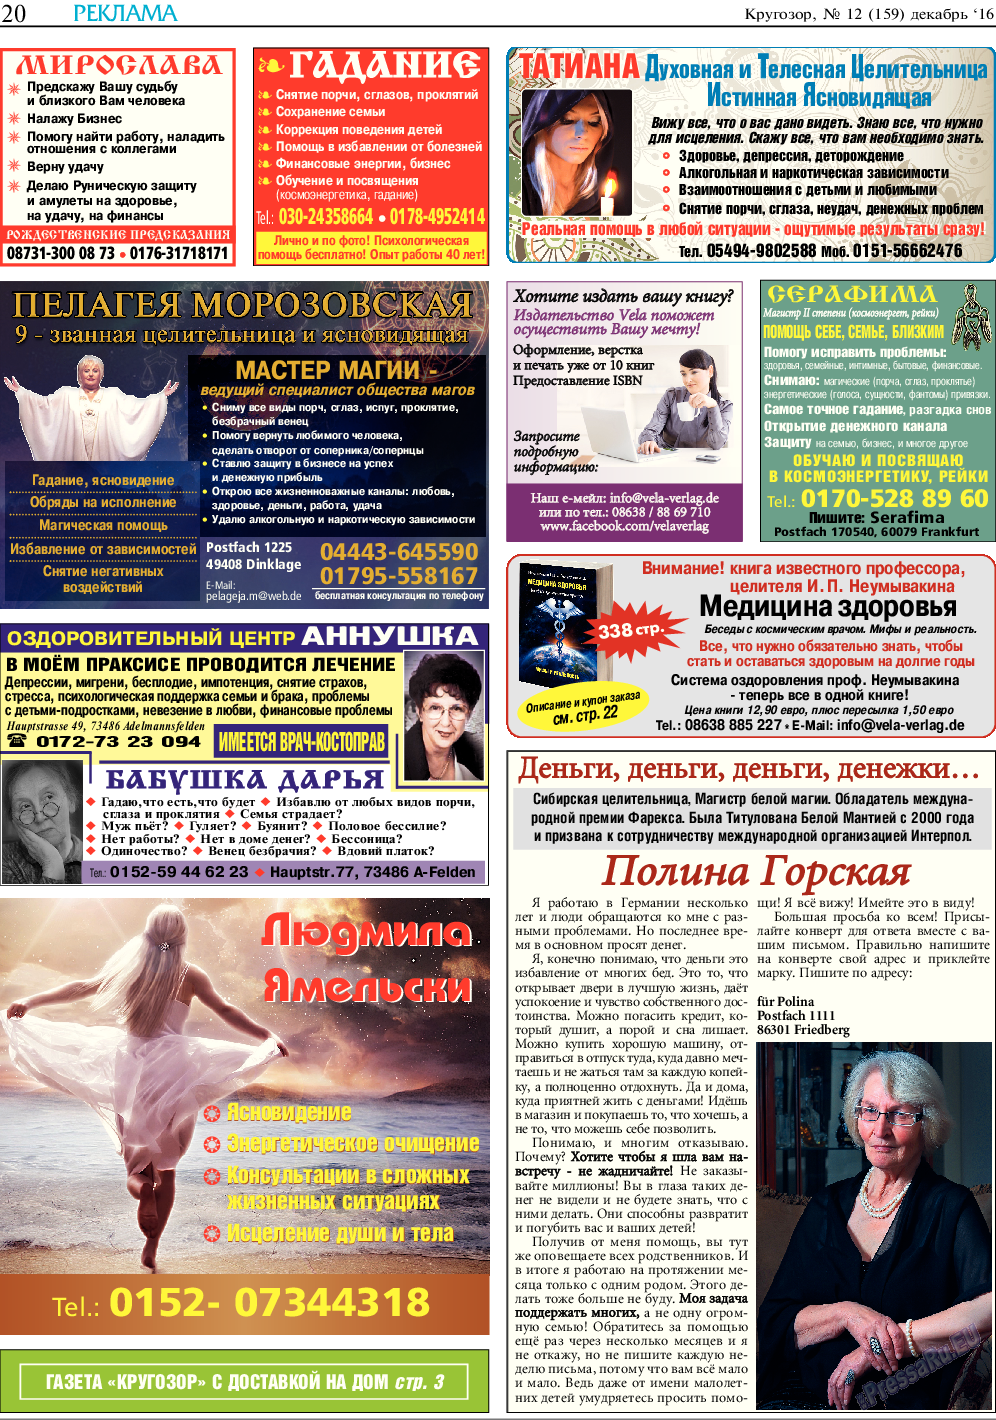 Кругозор, газета. 2016 №12 стр.20